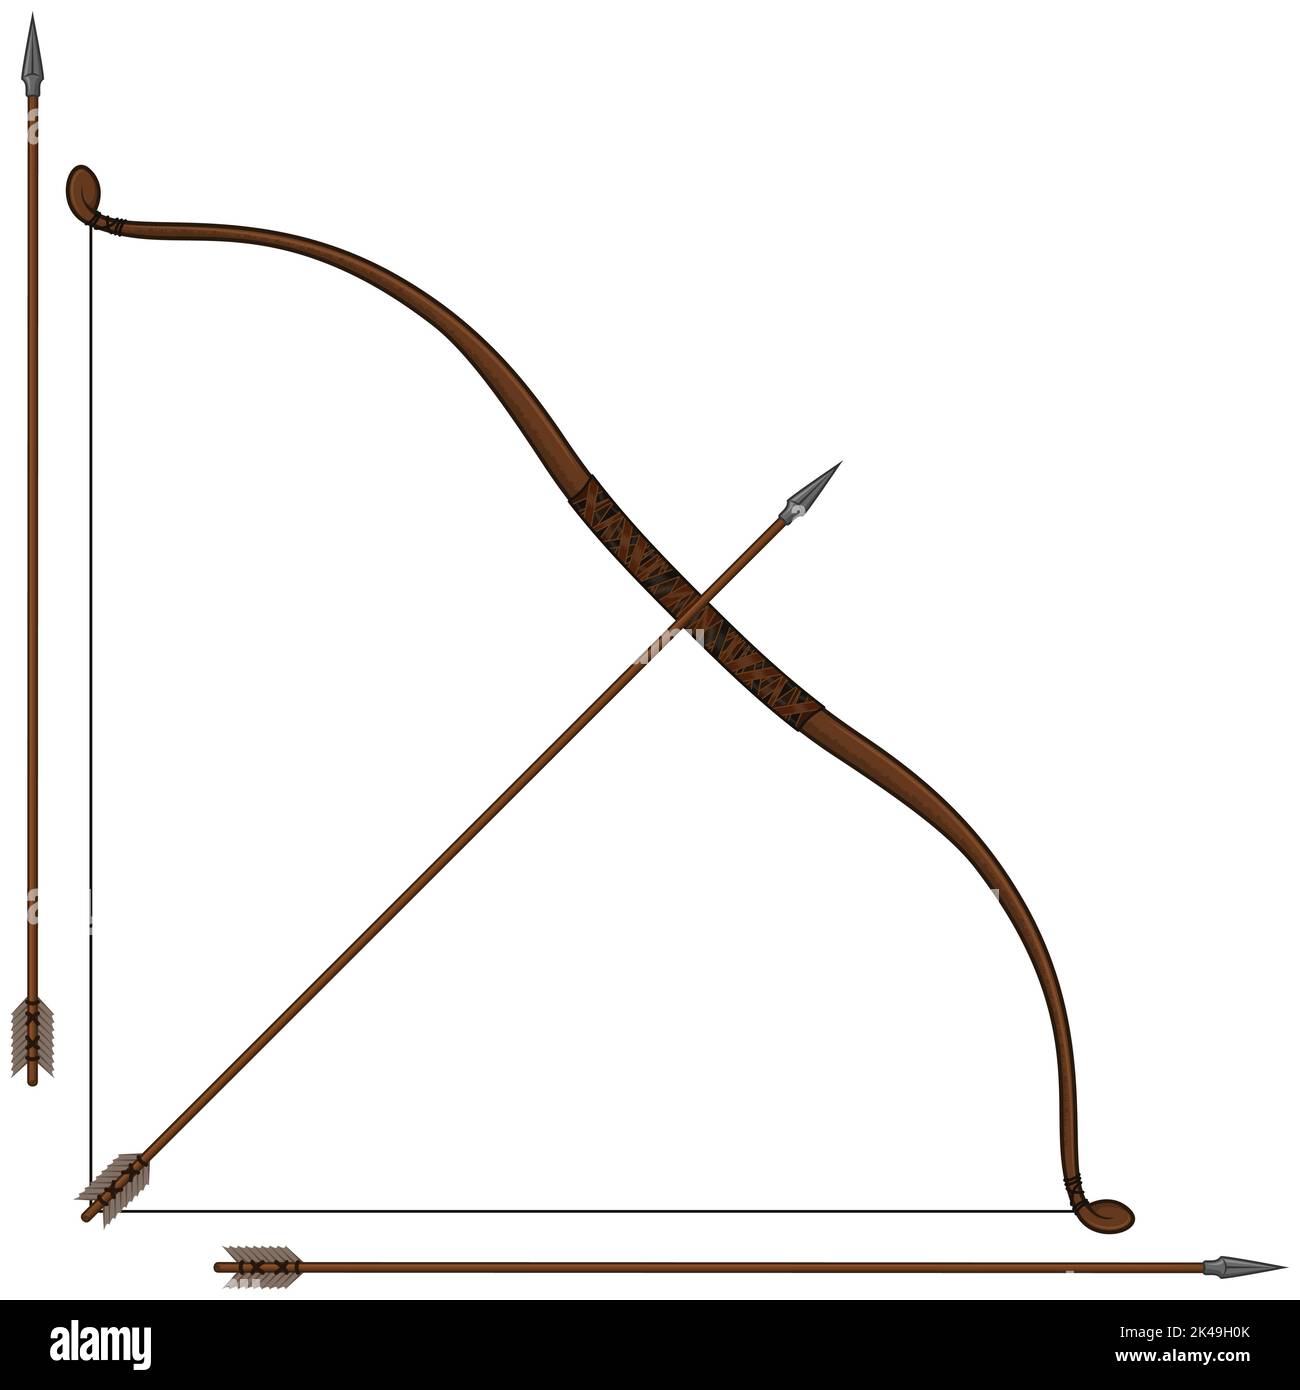 Kit de tir à l'arc conception vectorielle pour le tir de cible, illustration de la flèche de la boucle de l'arc Illustration de Vecteur